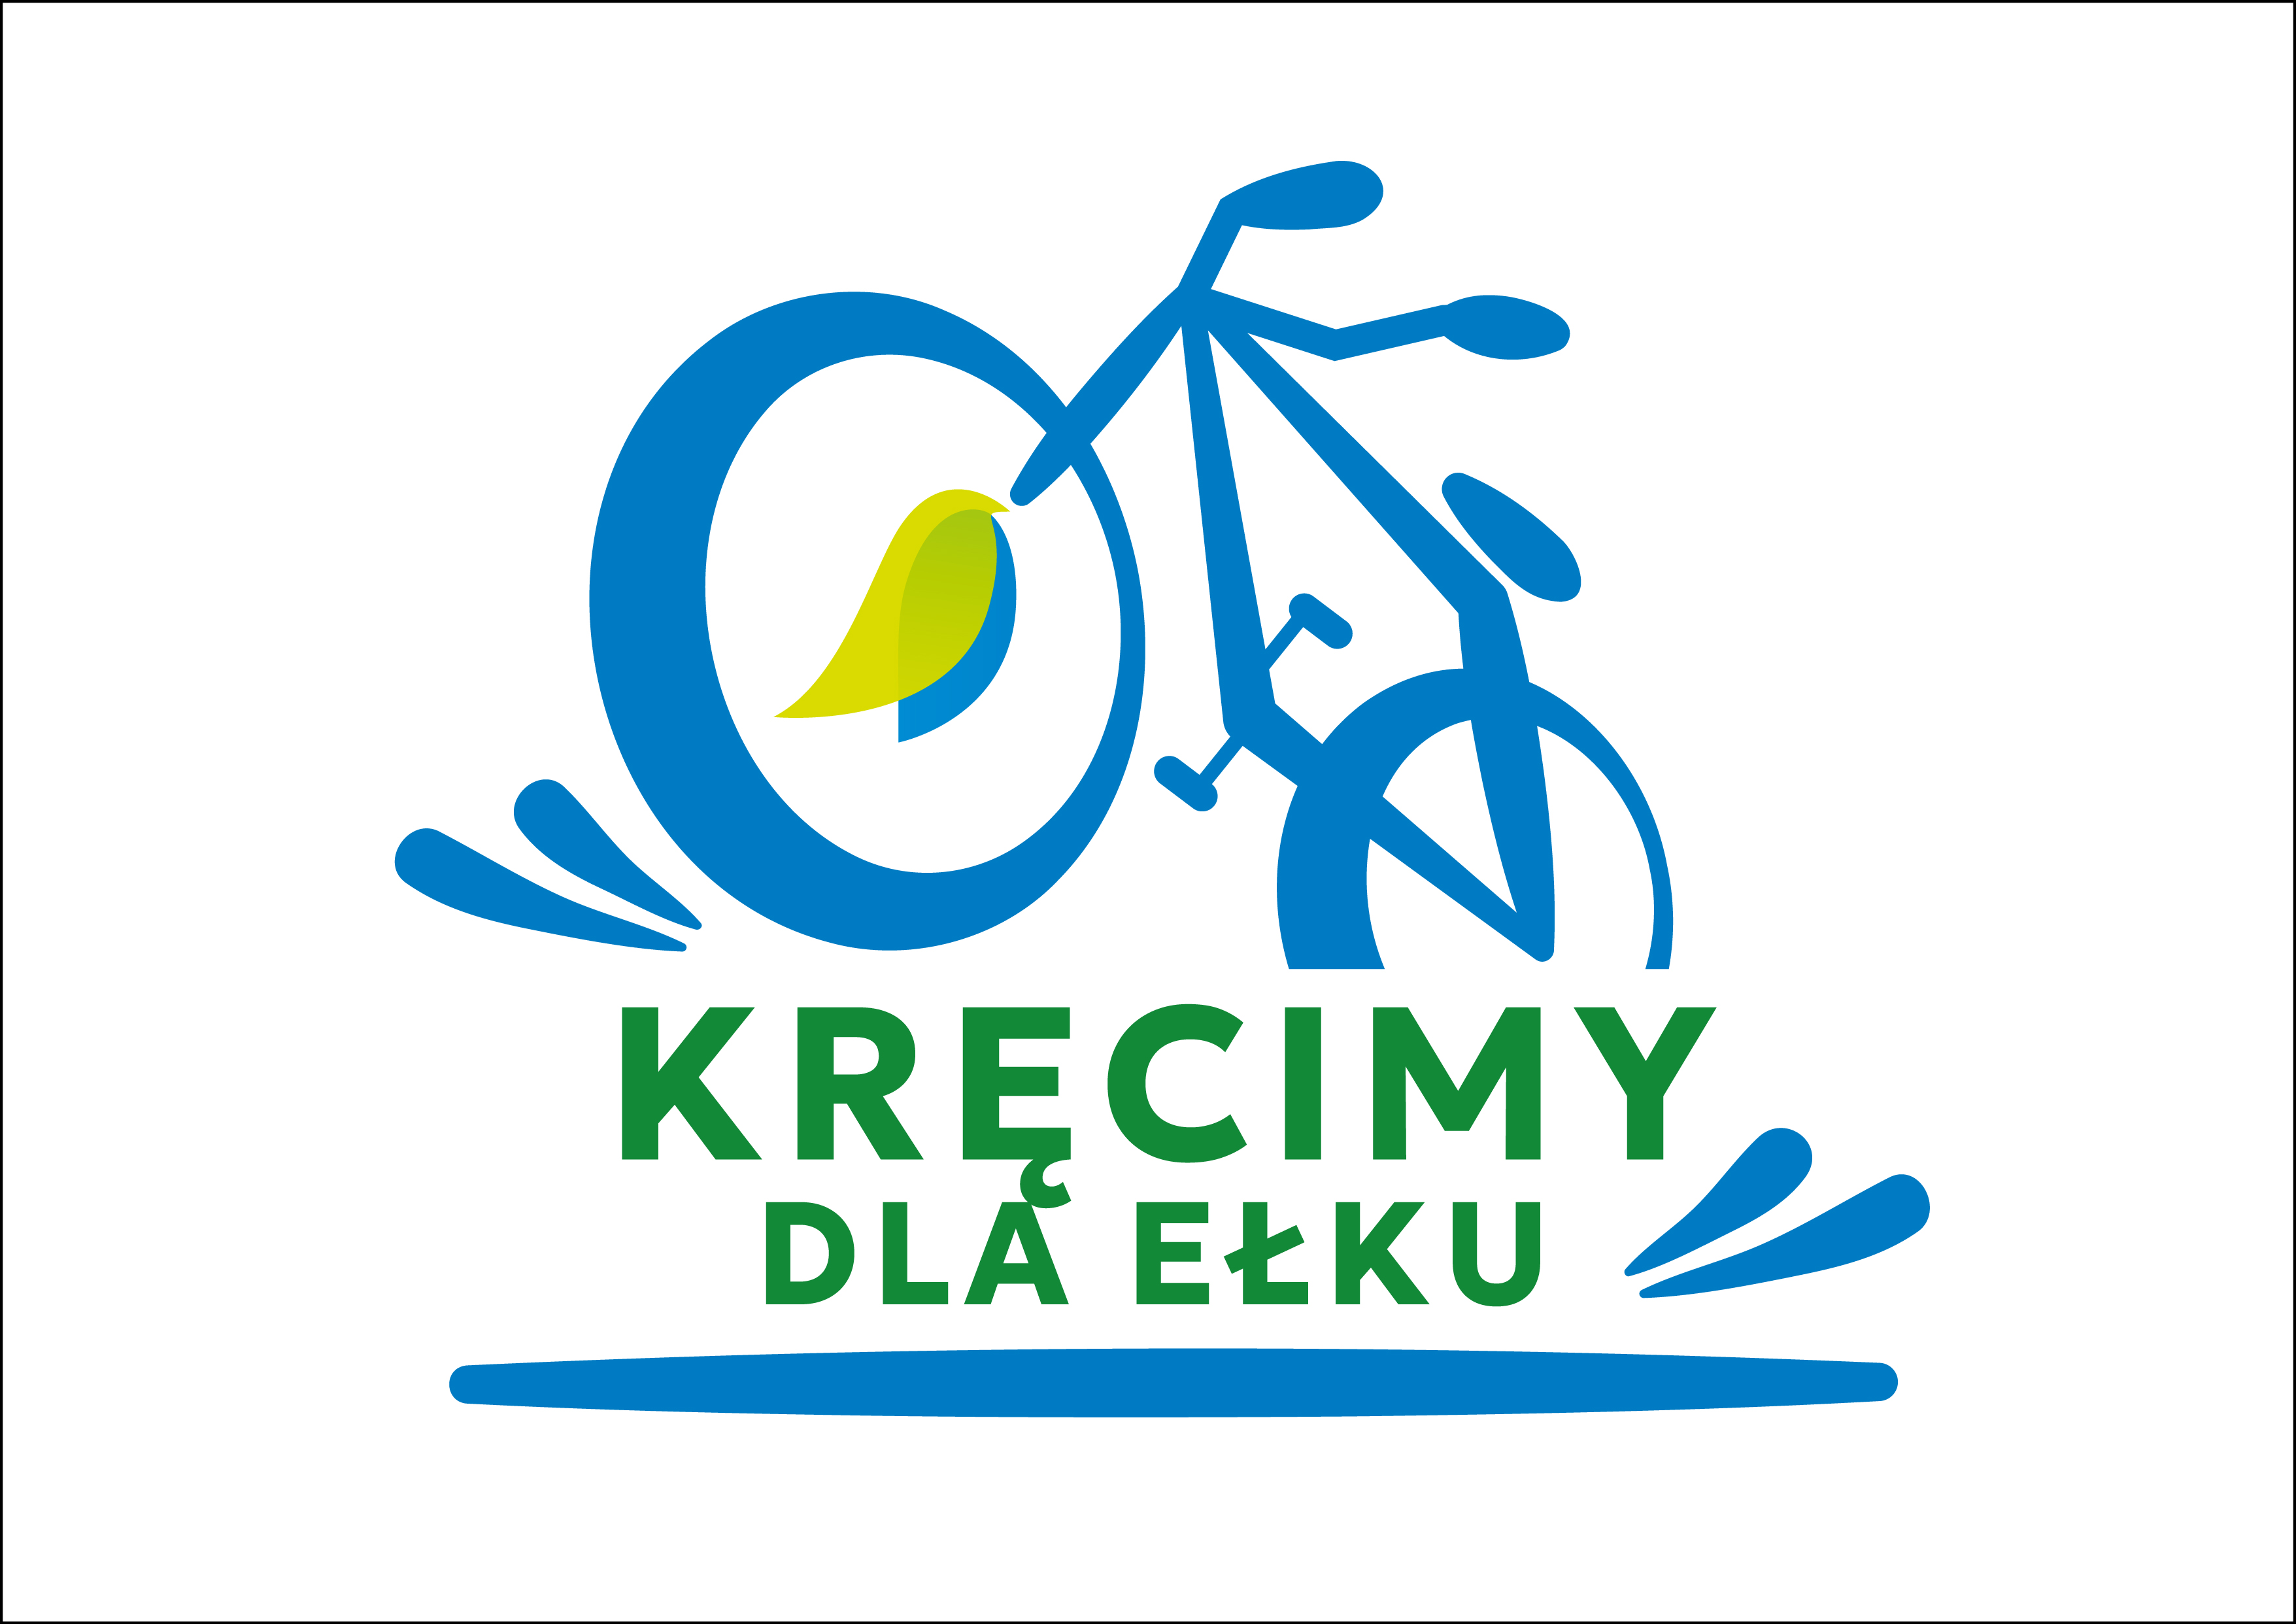 Елк має шанс стати велосипедною столицею Польщі